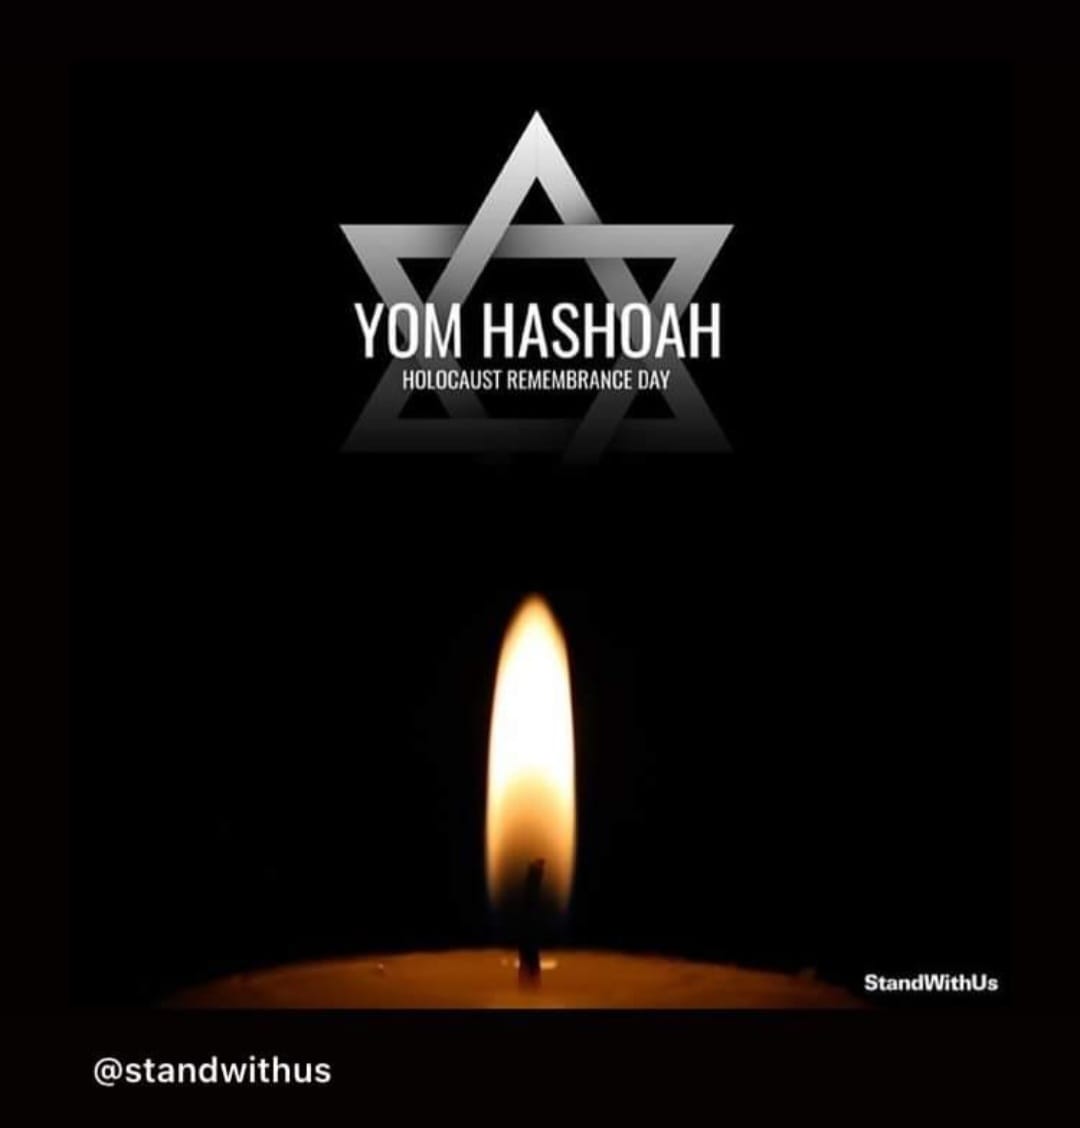 Assim como hj lembramos e honramos as vítimas do Holocausto no Yom Hashoá, é crucial reconhecer e prestar solidariedade às vítimas das inundações no RS. Em momentos de tragédia, a solidariedade e o apoio mútuo são essenciais para superar adversidades e reconstruir comunidades.